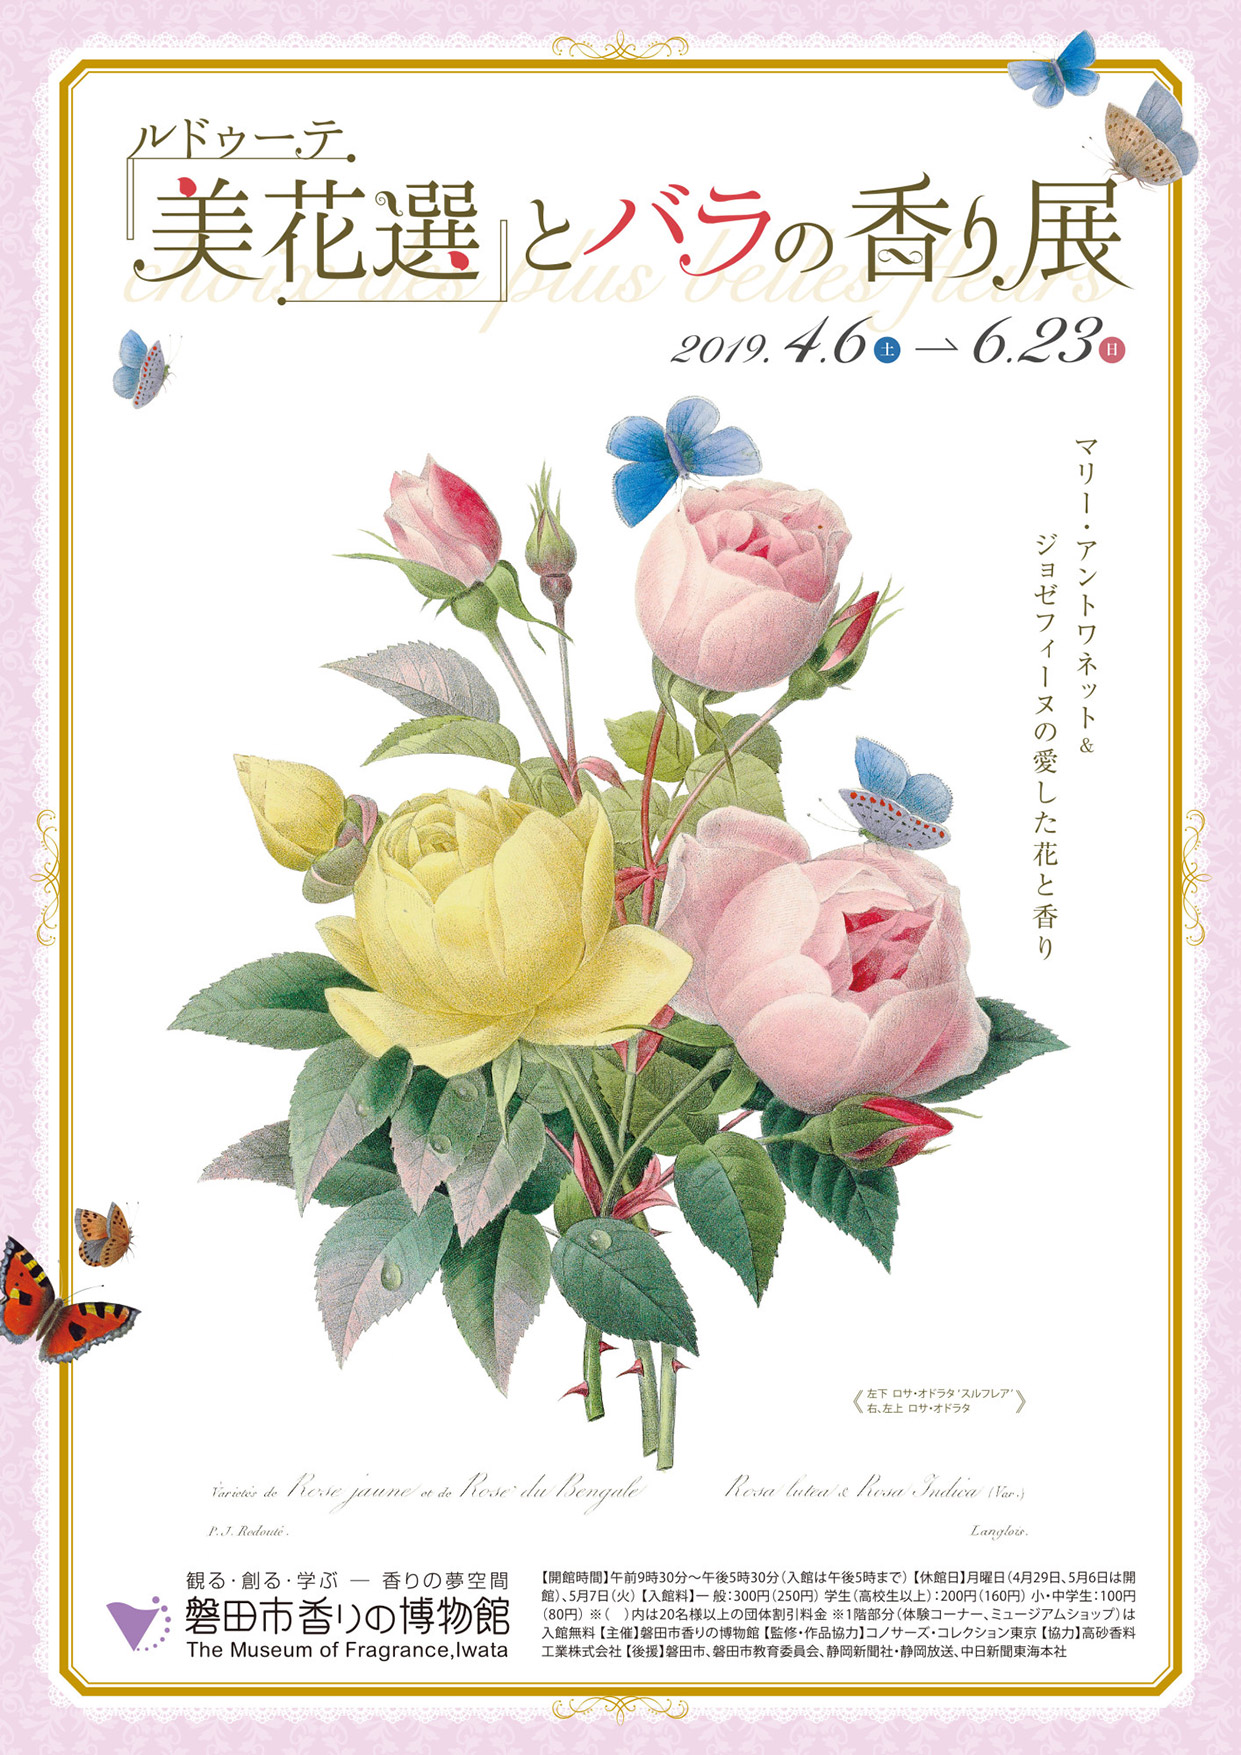 ルドゥーテ「美花選」とバラの香り展